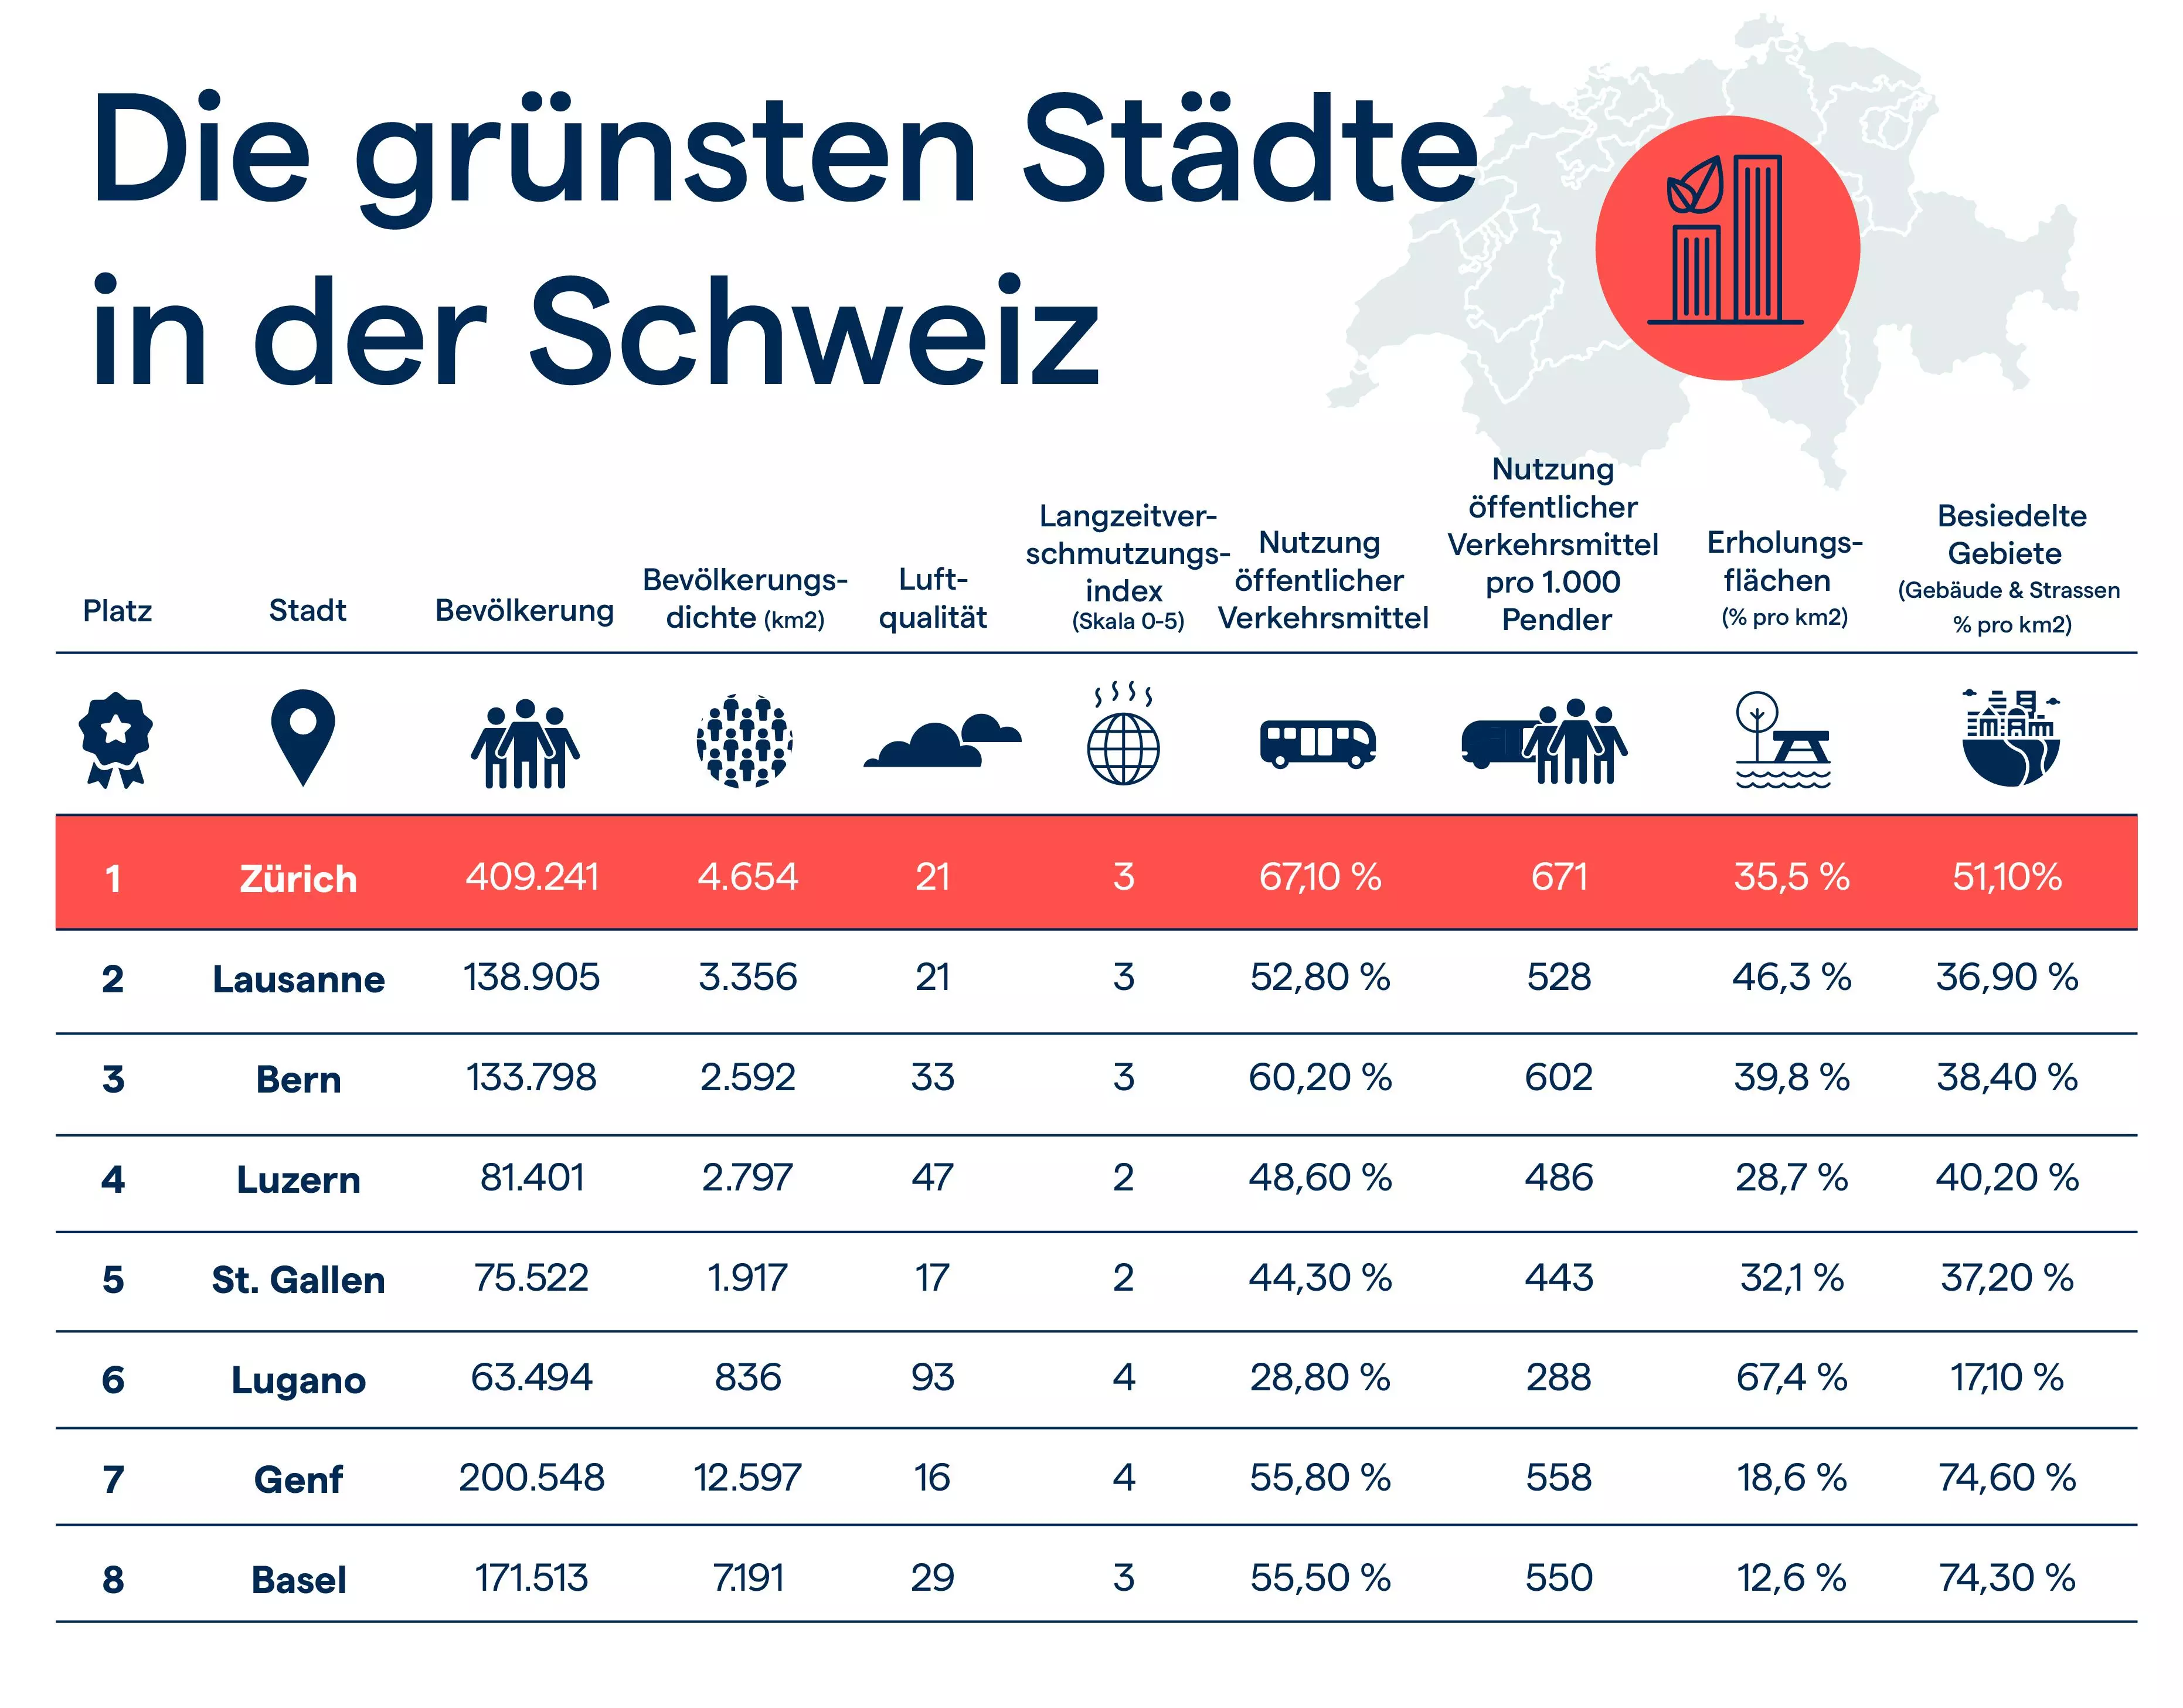 Die nachhaltigsten Städte der Schweiz